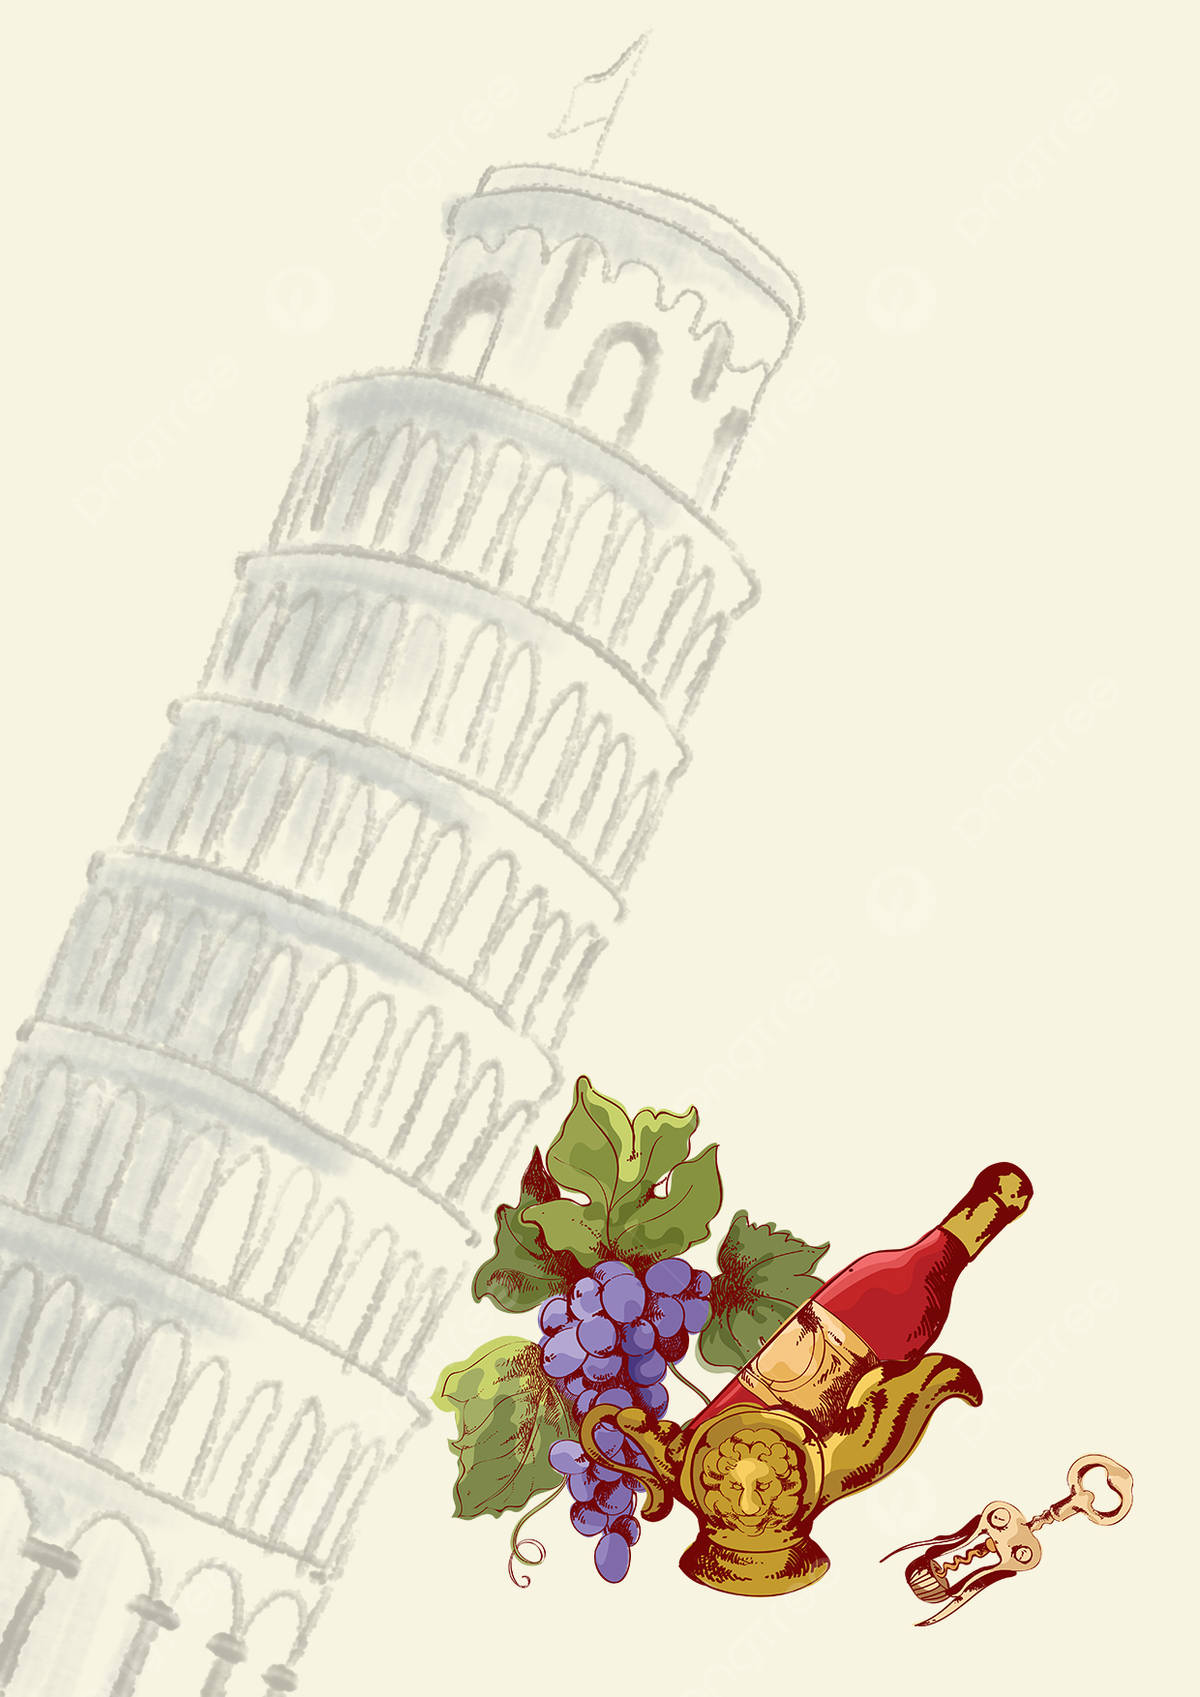 Tower Of Pisa Drawing Wallpaper